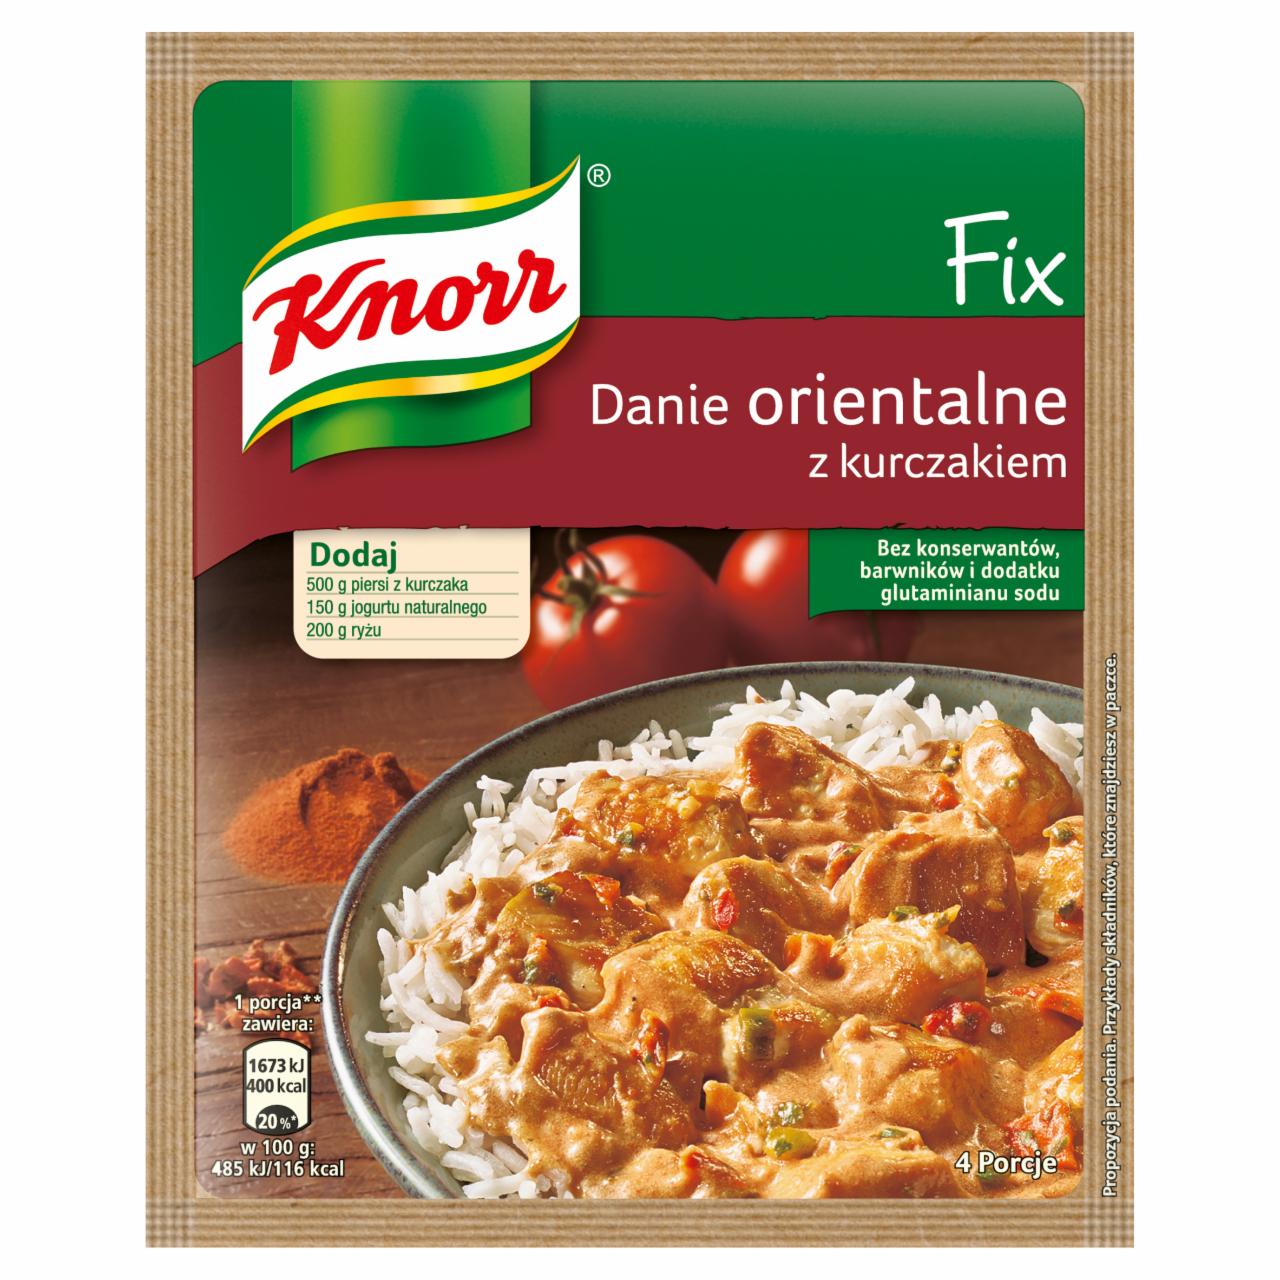 Zdjęcia - Knorr Fix danie orientalne z kurczakiem 48 g